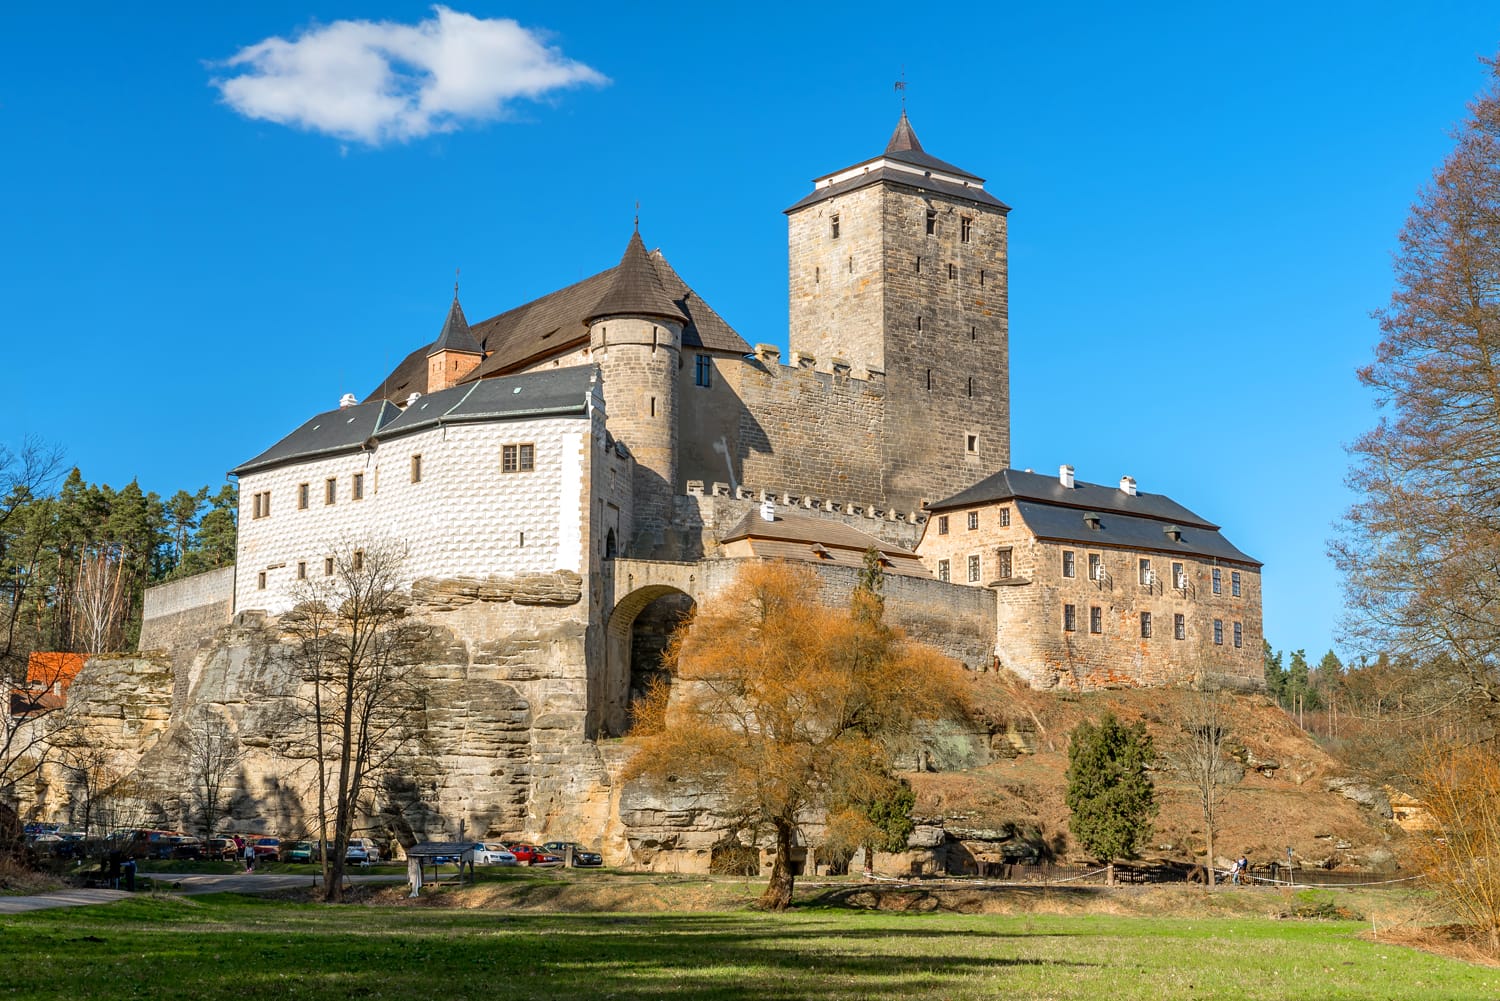 Castle Kost in the Czech Republic